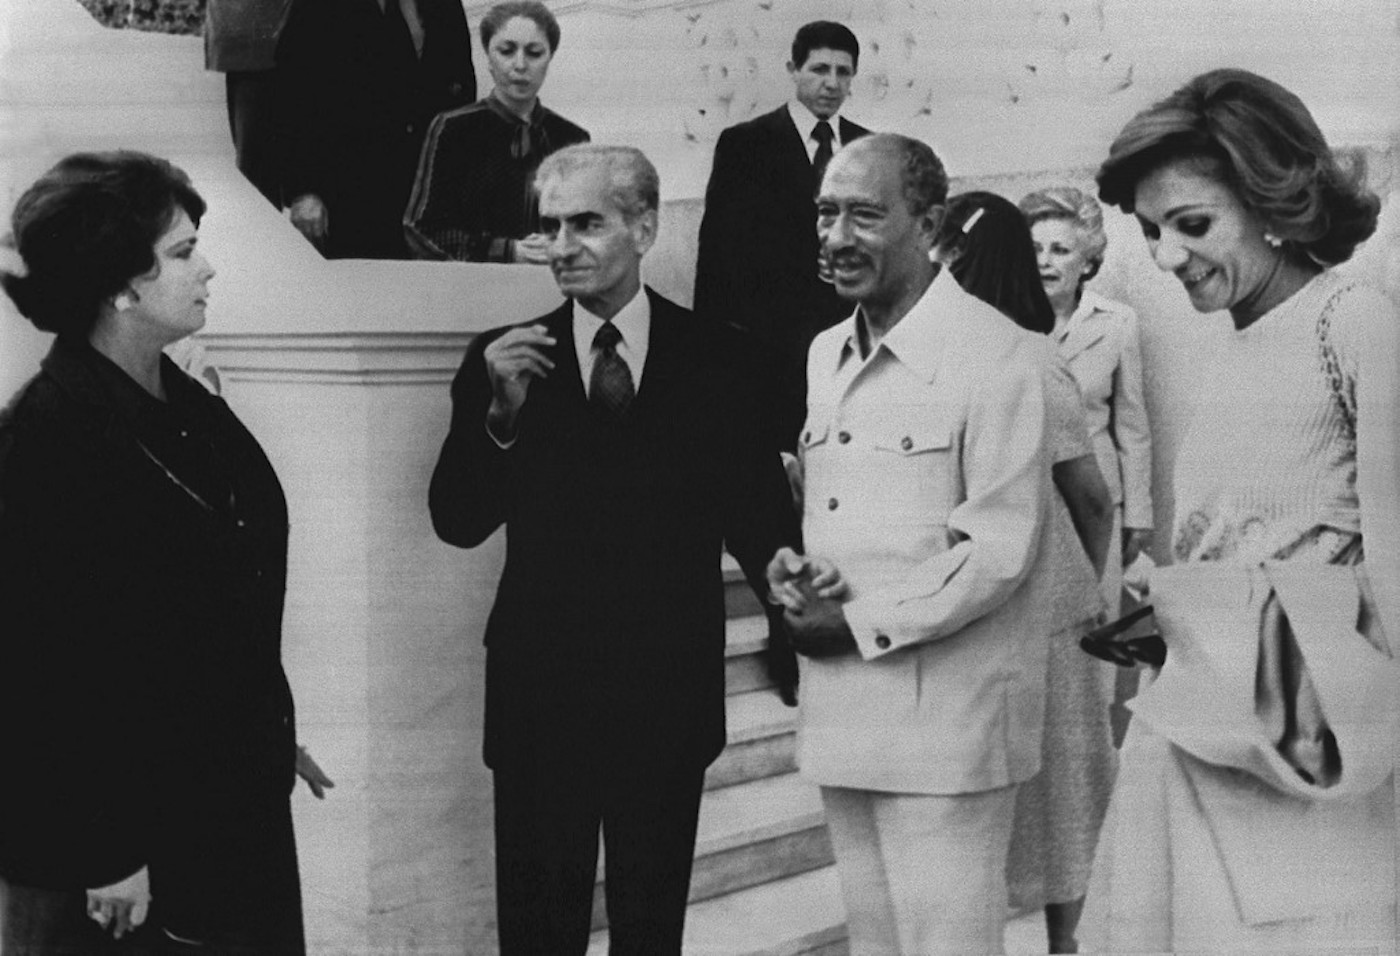 Anouar al-Sadate et son épouse Jihan reçoivent le dernier shah d’Iran, Mohammed Reza Pahlavi – il avait quitté, forcé, le pouvoir un peu plus d’un an auparavant – et sa femme Farah le 17 avril 1980 dans leur maison de repos du barrage du Nil au nord du Caire. (AFP)